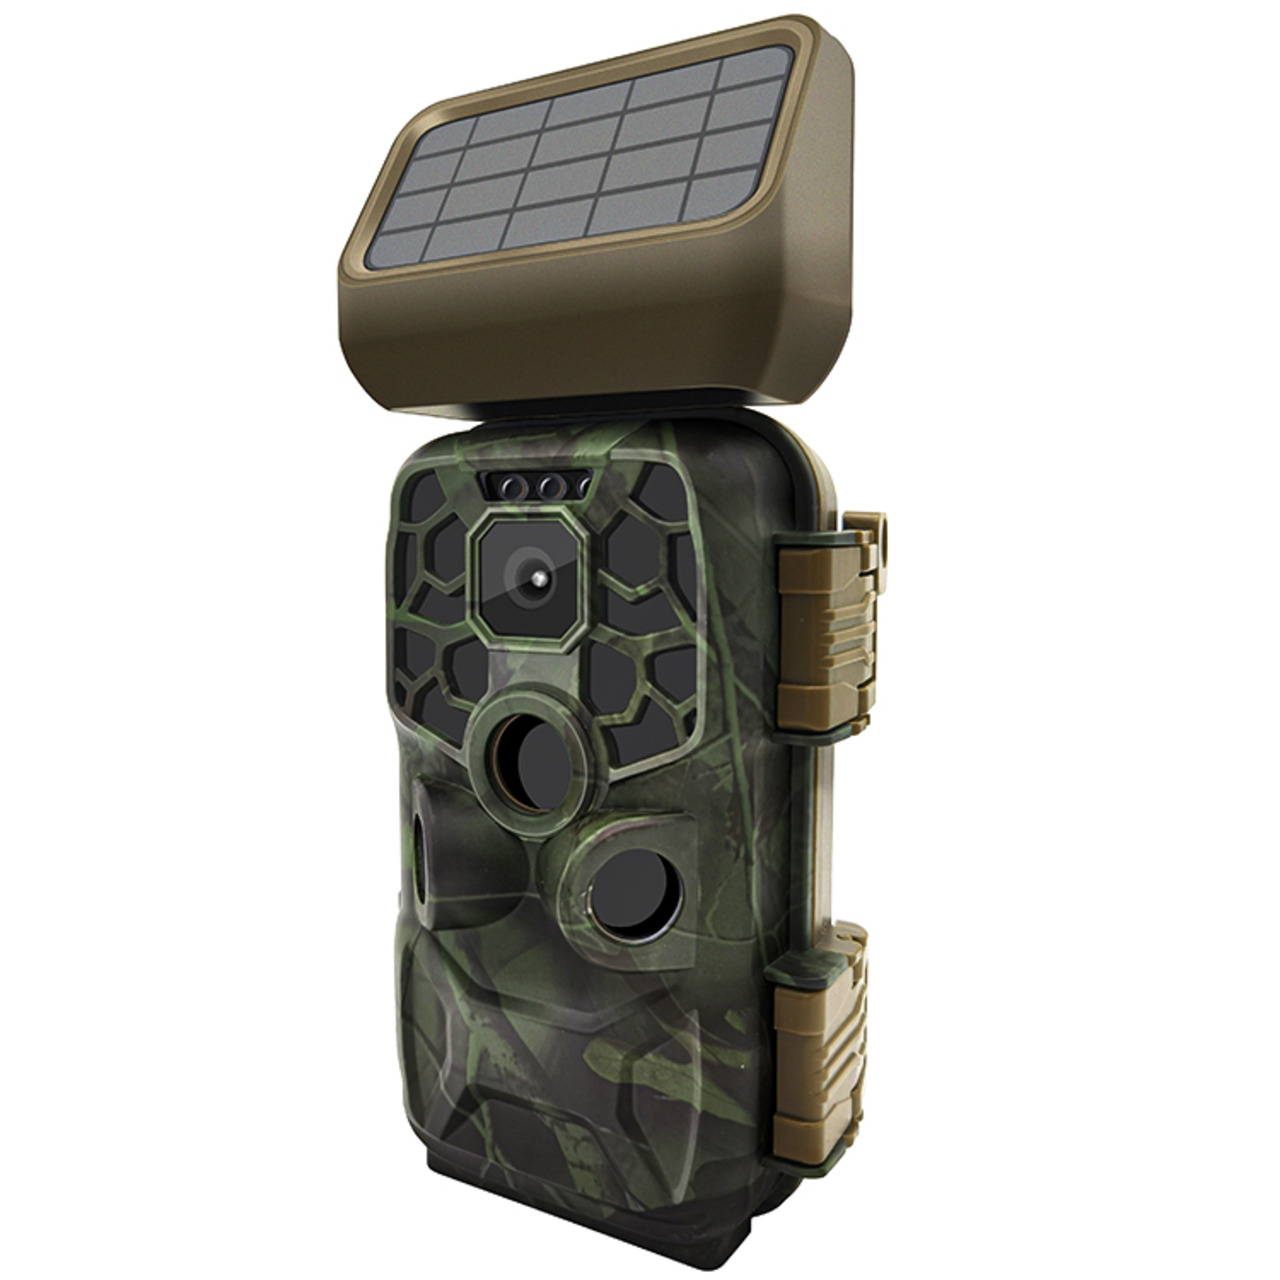 Braun Fotofalle - Wildkamera Scouting Cam BLACK400 WiFi SOLAR- 24 MP- IP56- Auslsezeit 0-4s  unter Sicherheitstechnik